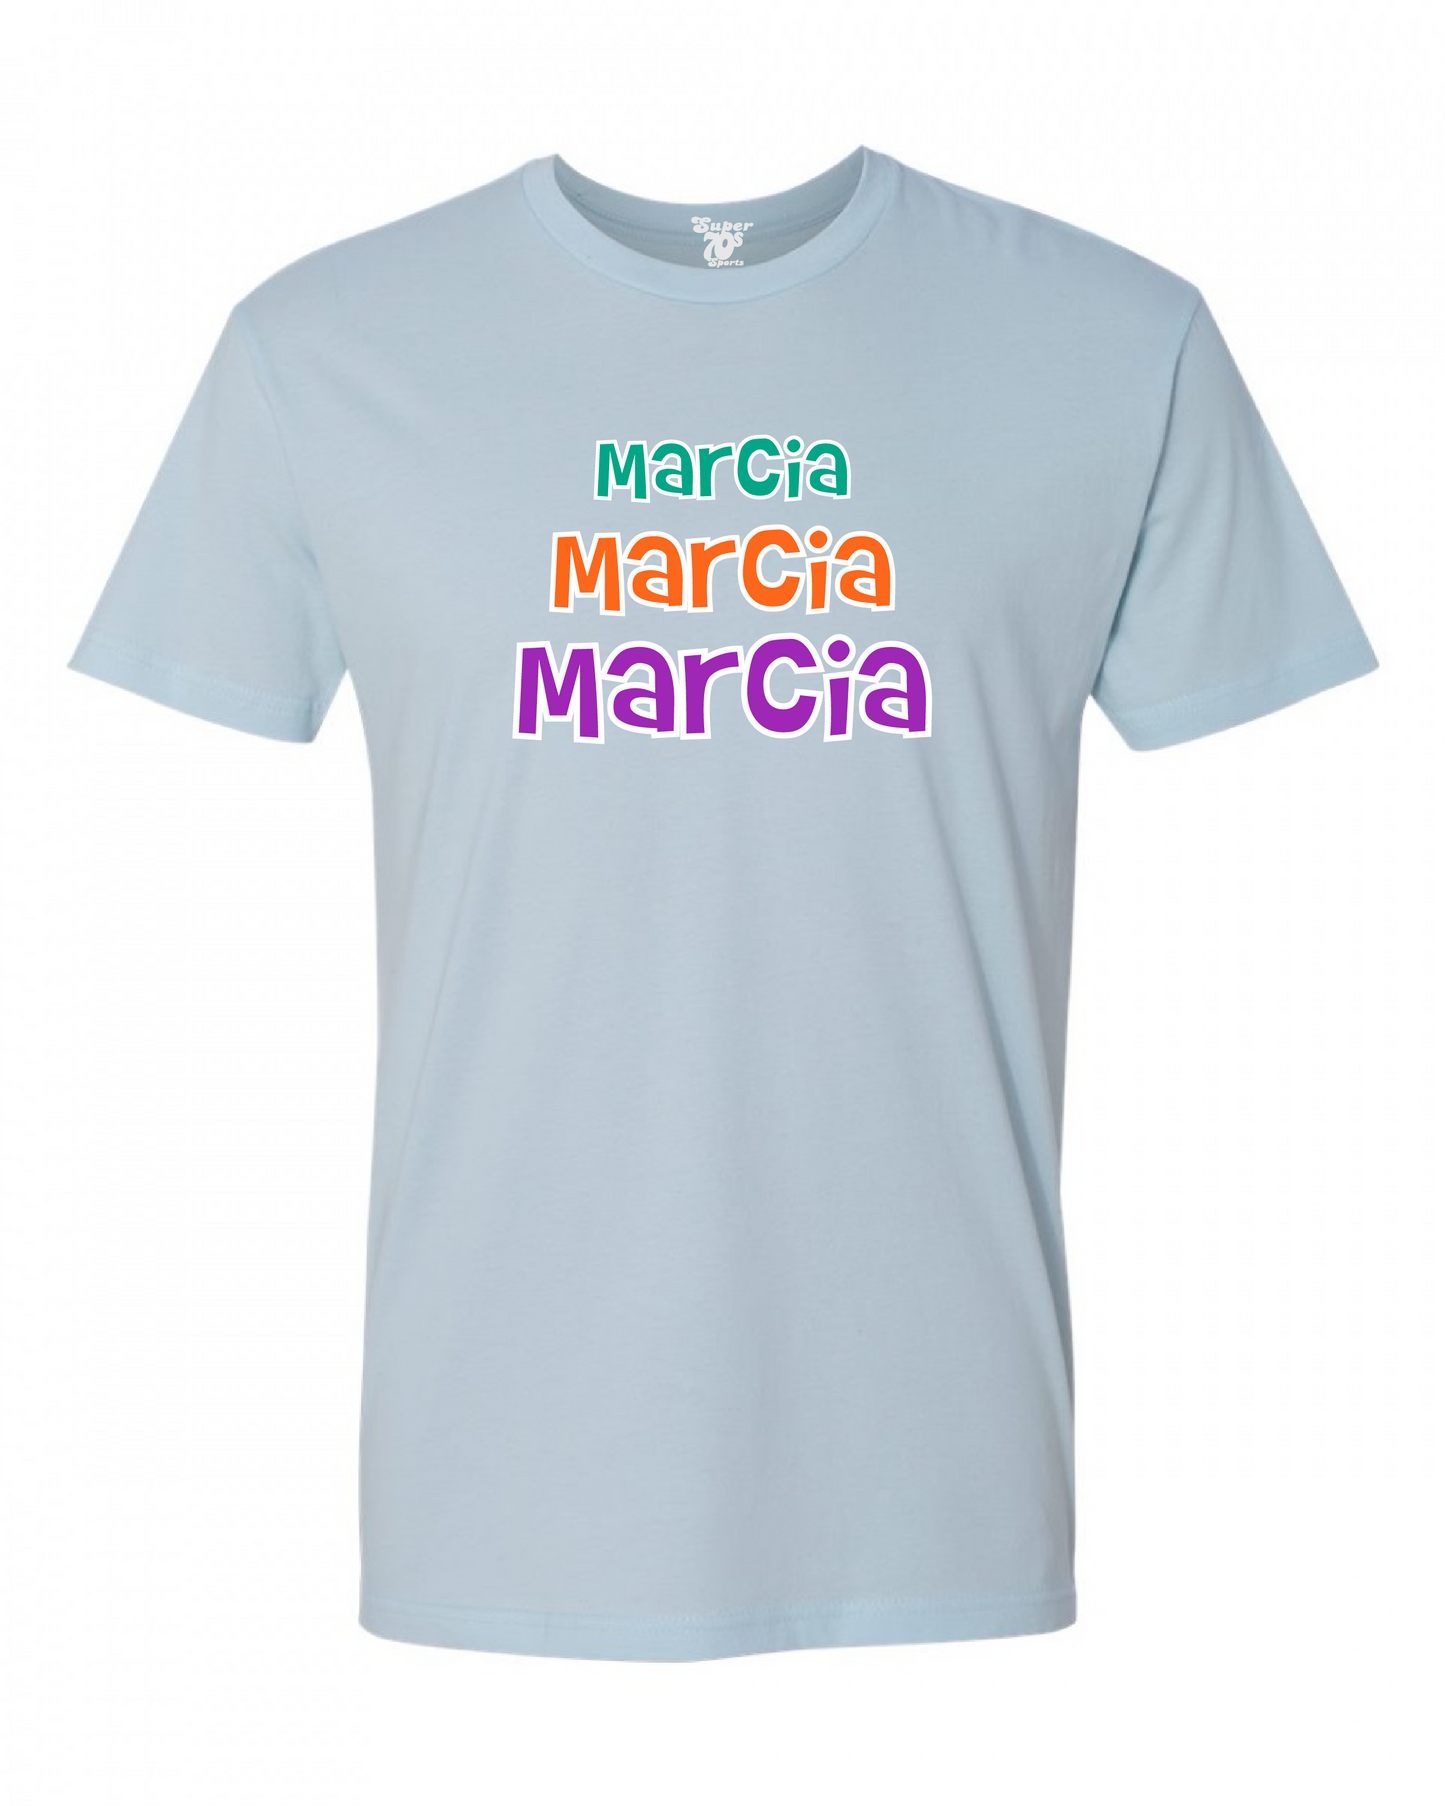 Marcia Marcia Marcia Tee